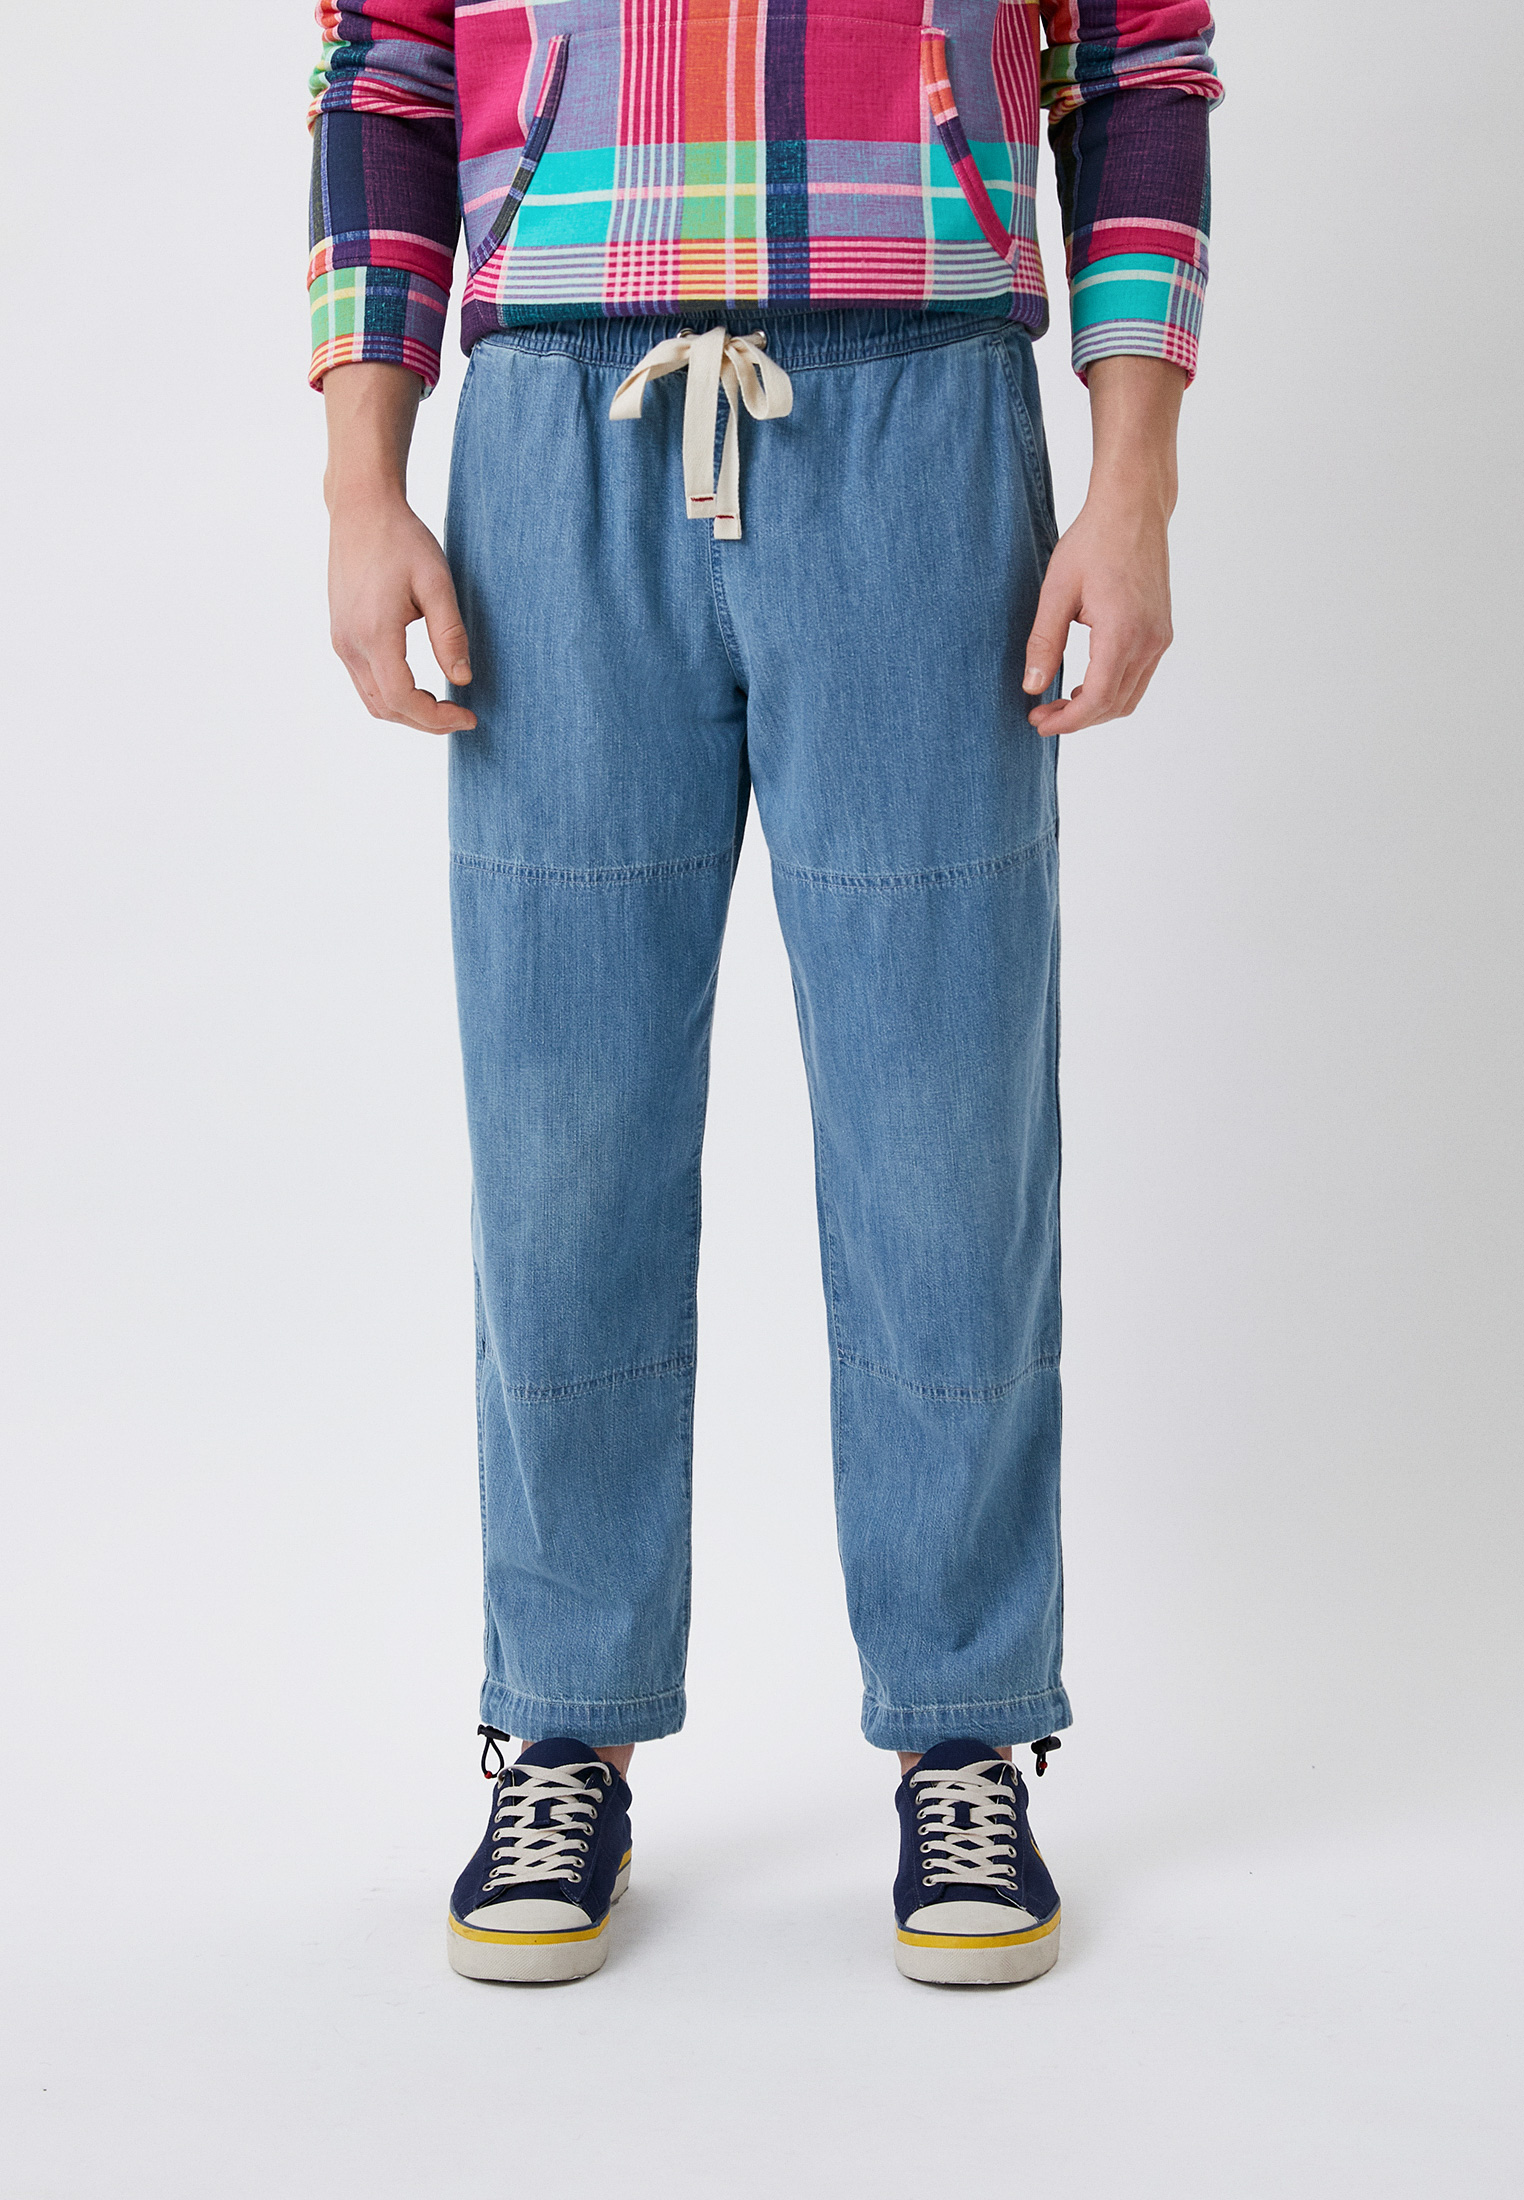 Мужские прямые джинсы Polo Ralph Lauren (Поло Ральф Лорен) Джинсы Polo Ralph Lauren